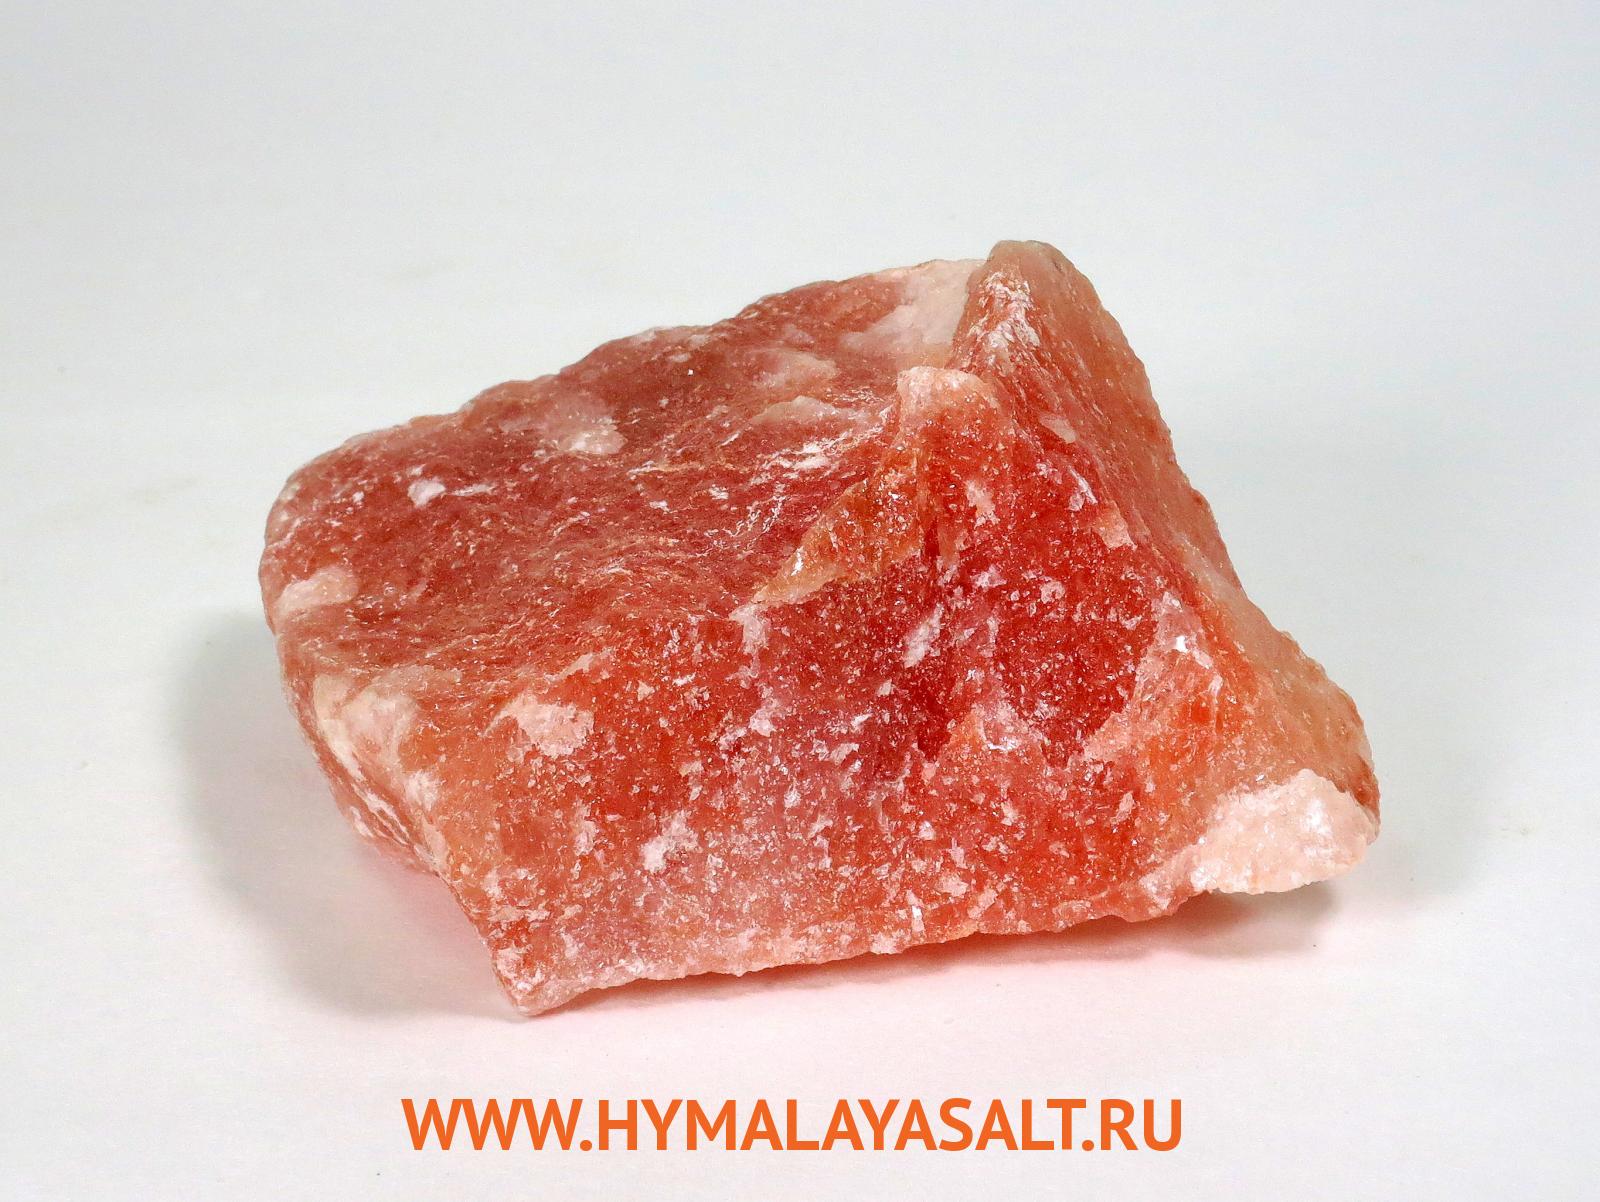 Гималайская соль: Камень из гималайской соли 10 кг